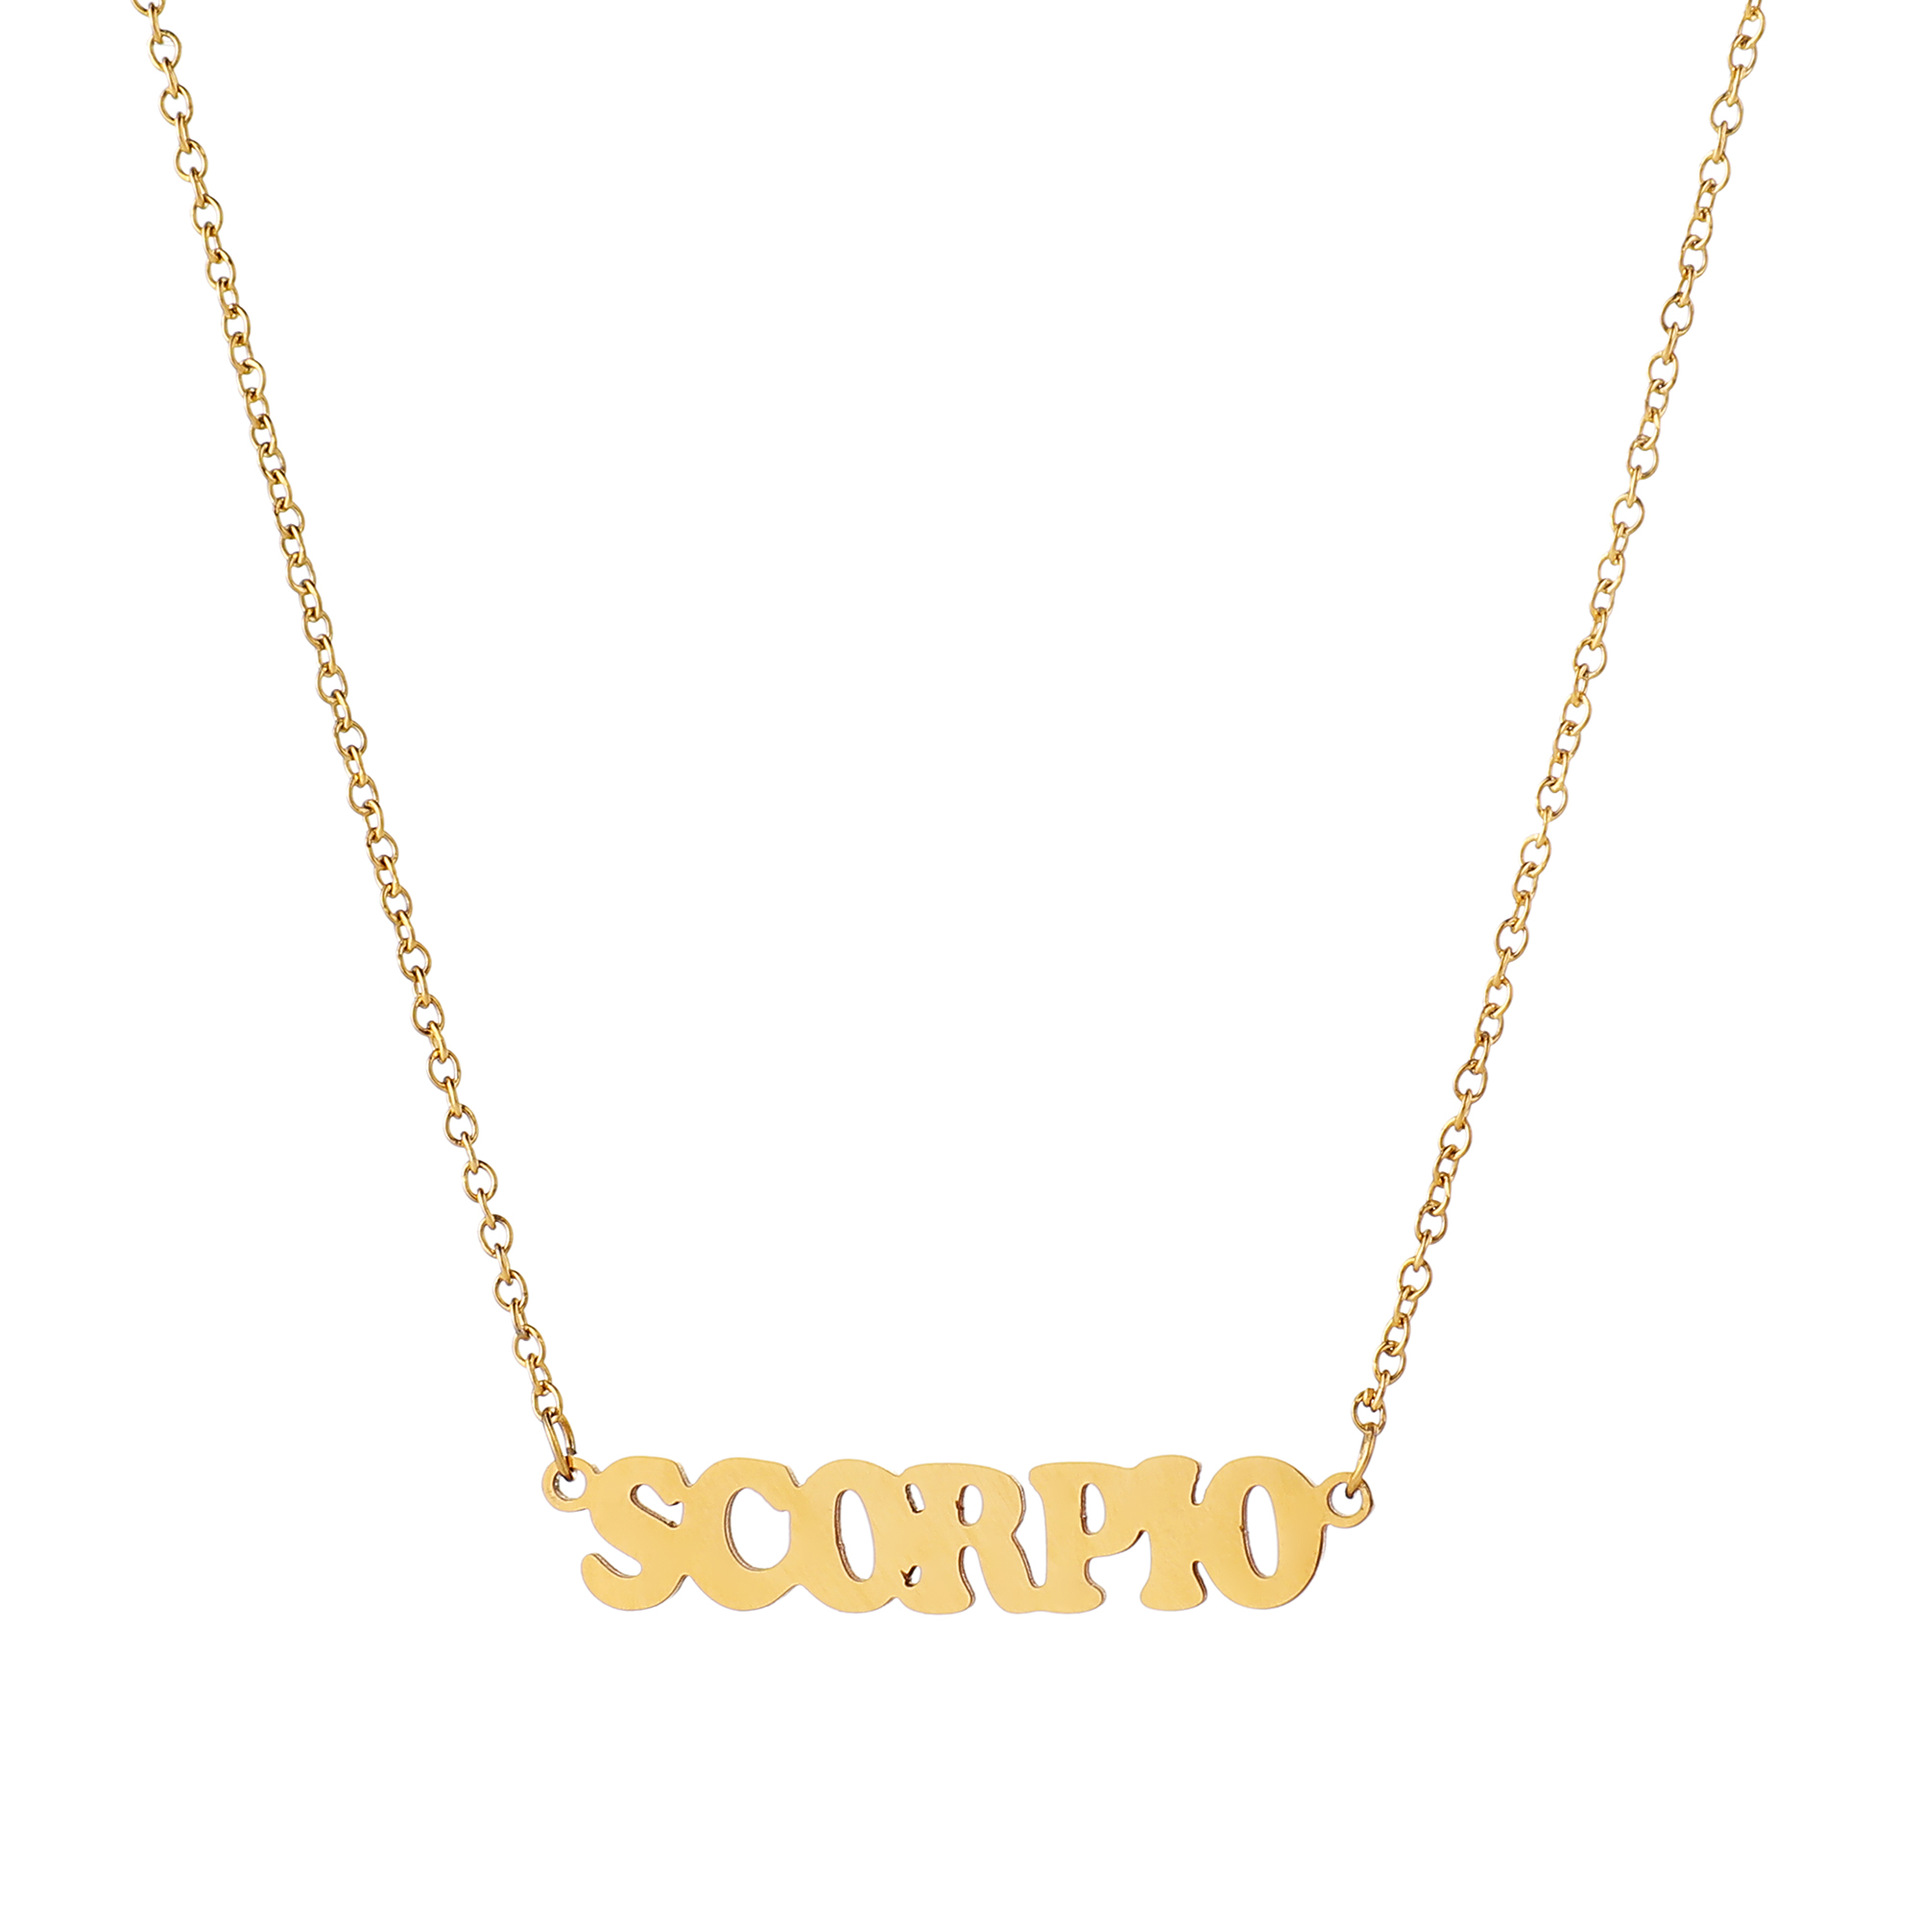 10 Scorpio